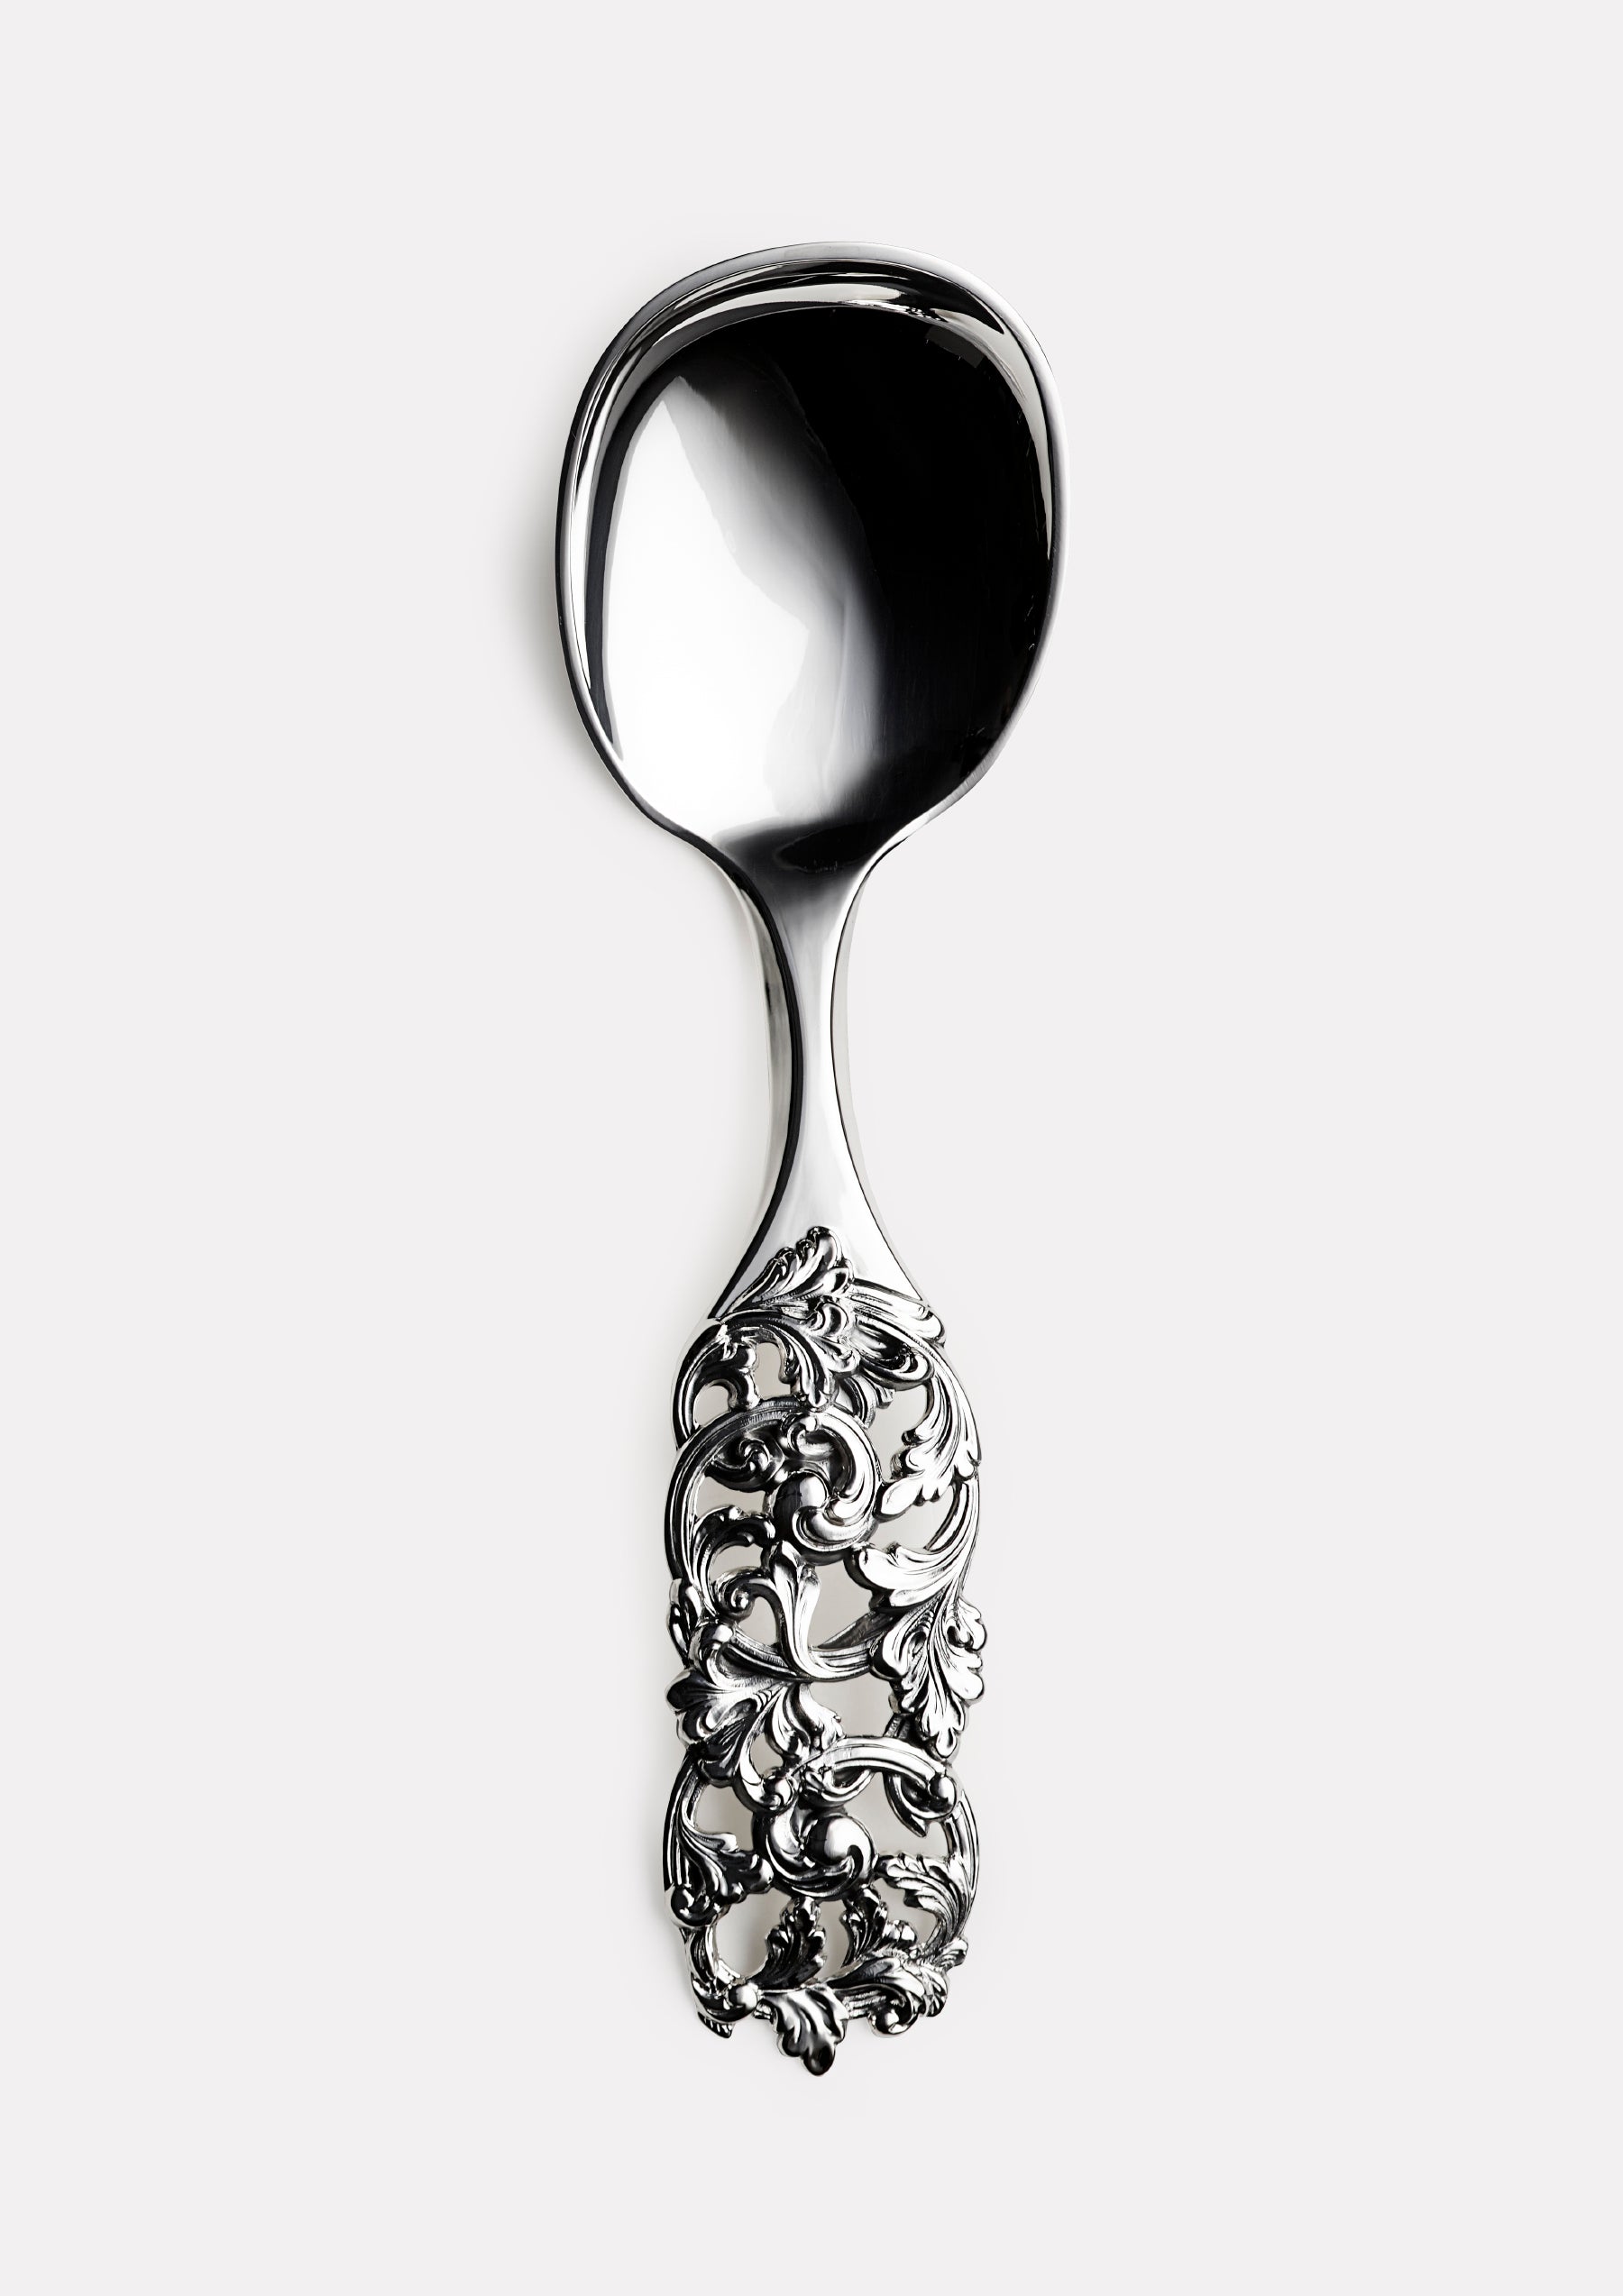 Elveseter no. 340 serving spoon